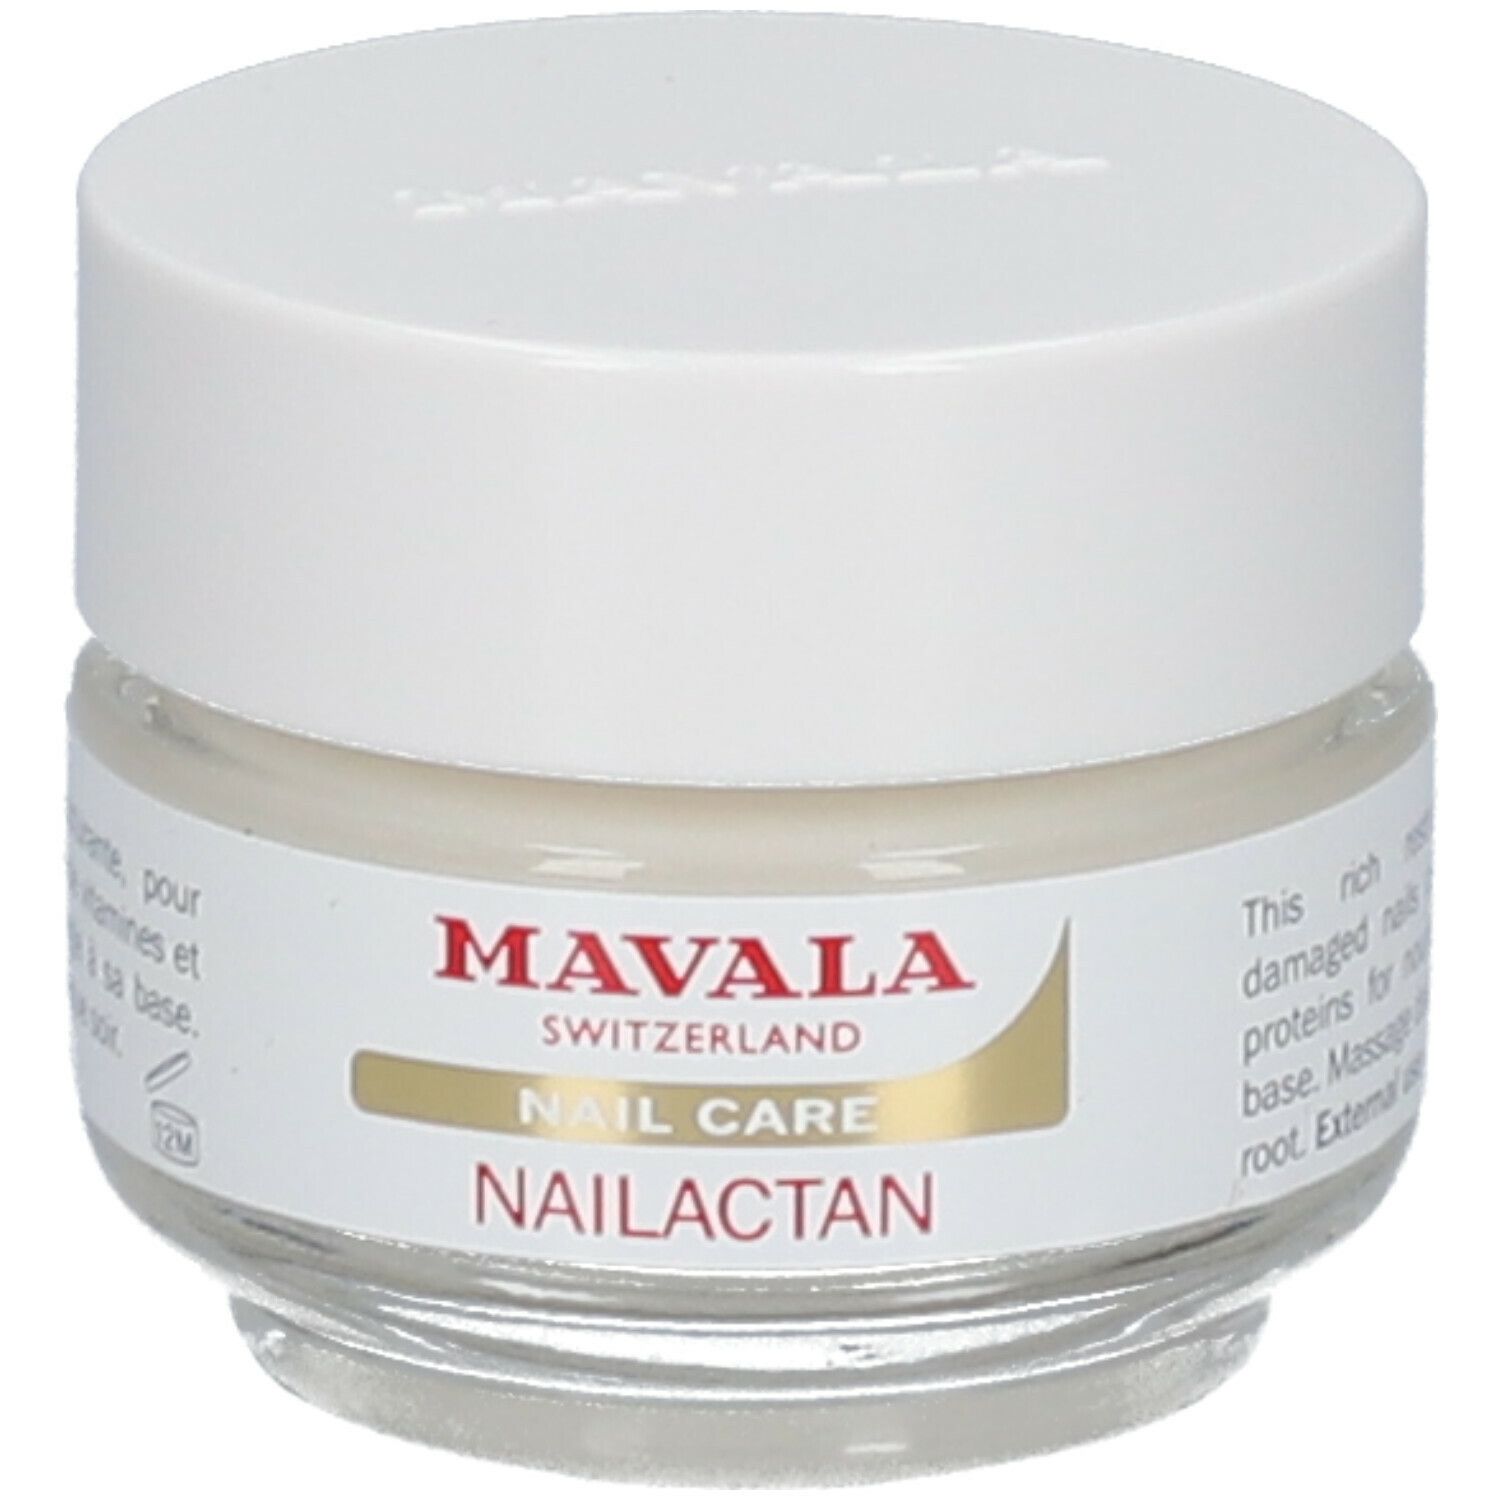 Mavala Nailactan Crème nourrissante pour ongles abîmés